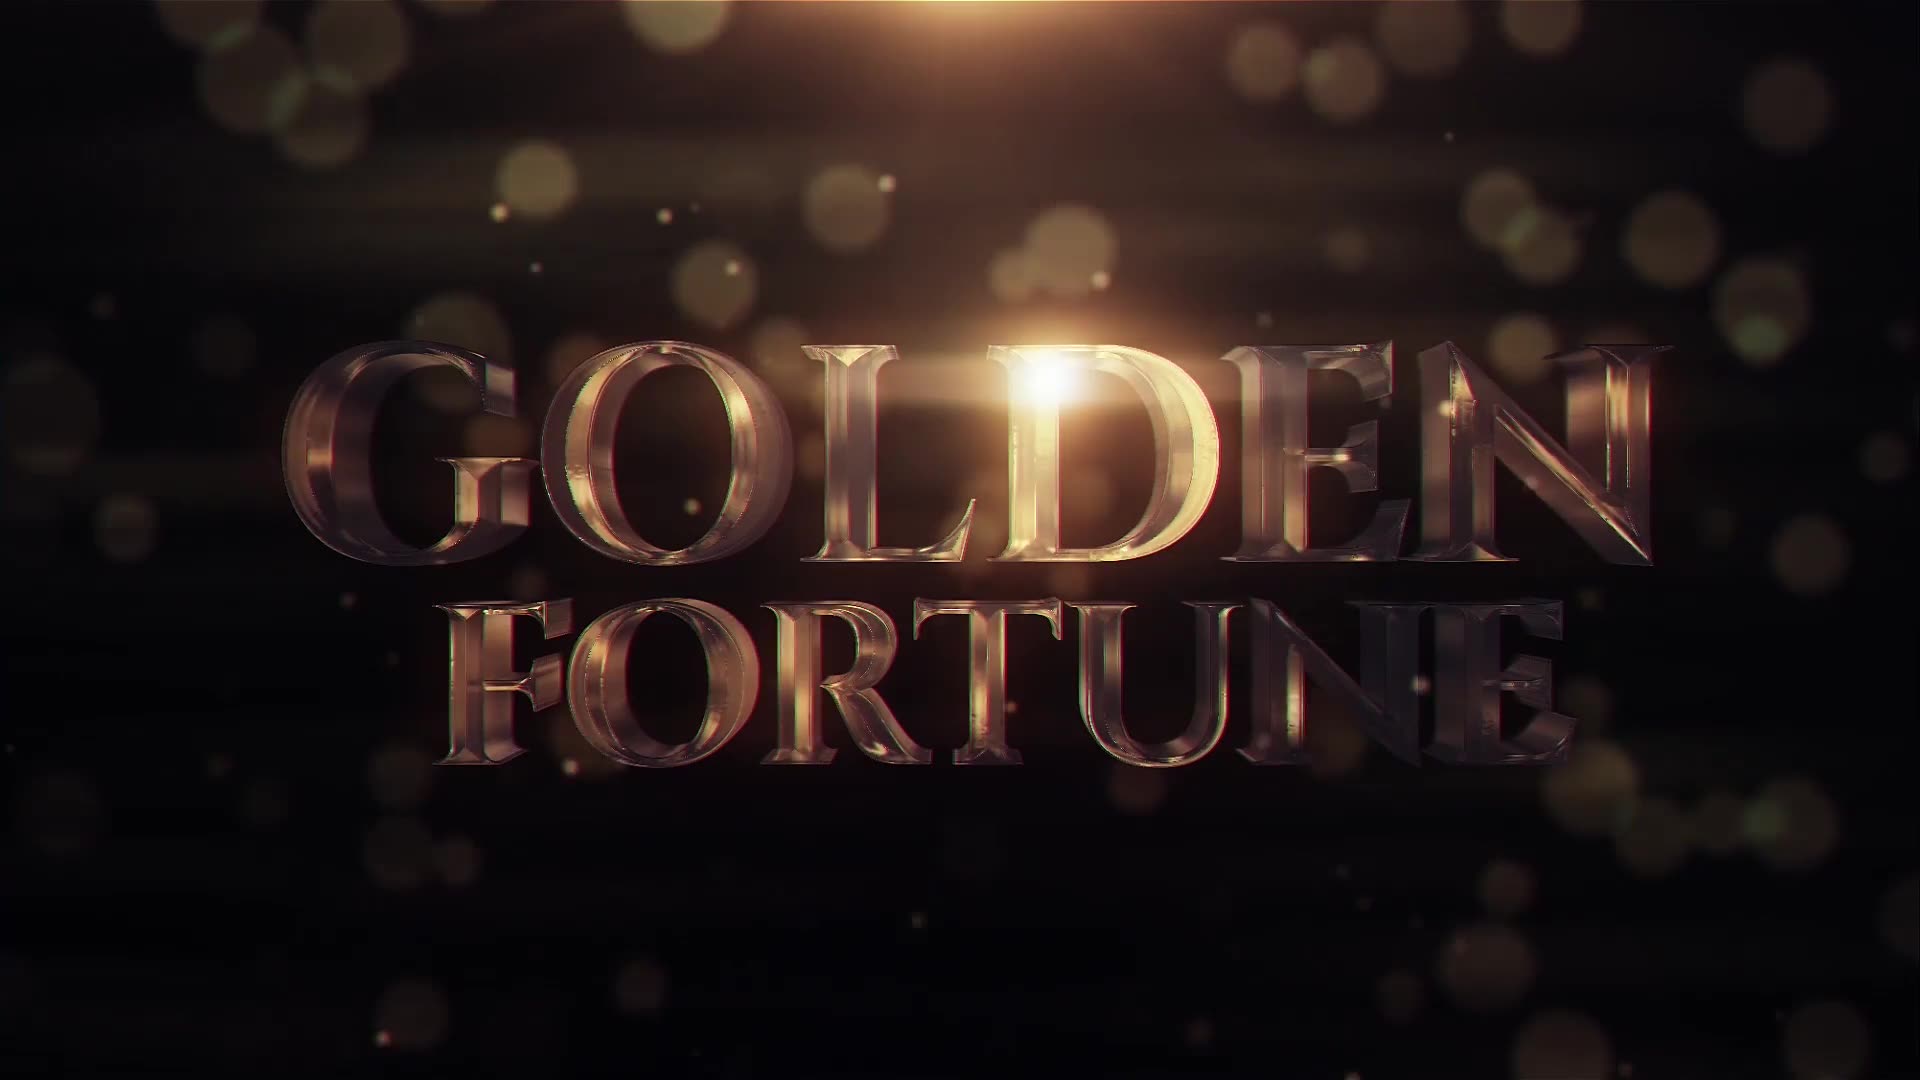 Golden Fortune Videohive 22595458 Premiere Pro Image 2